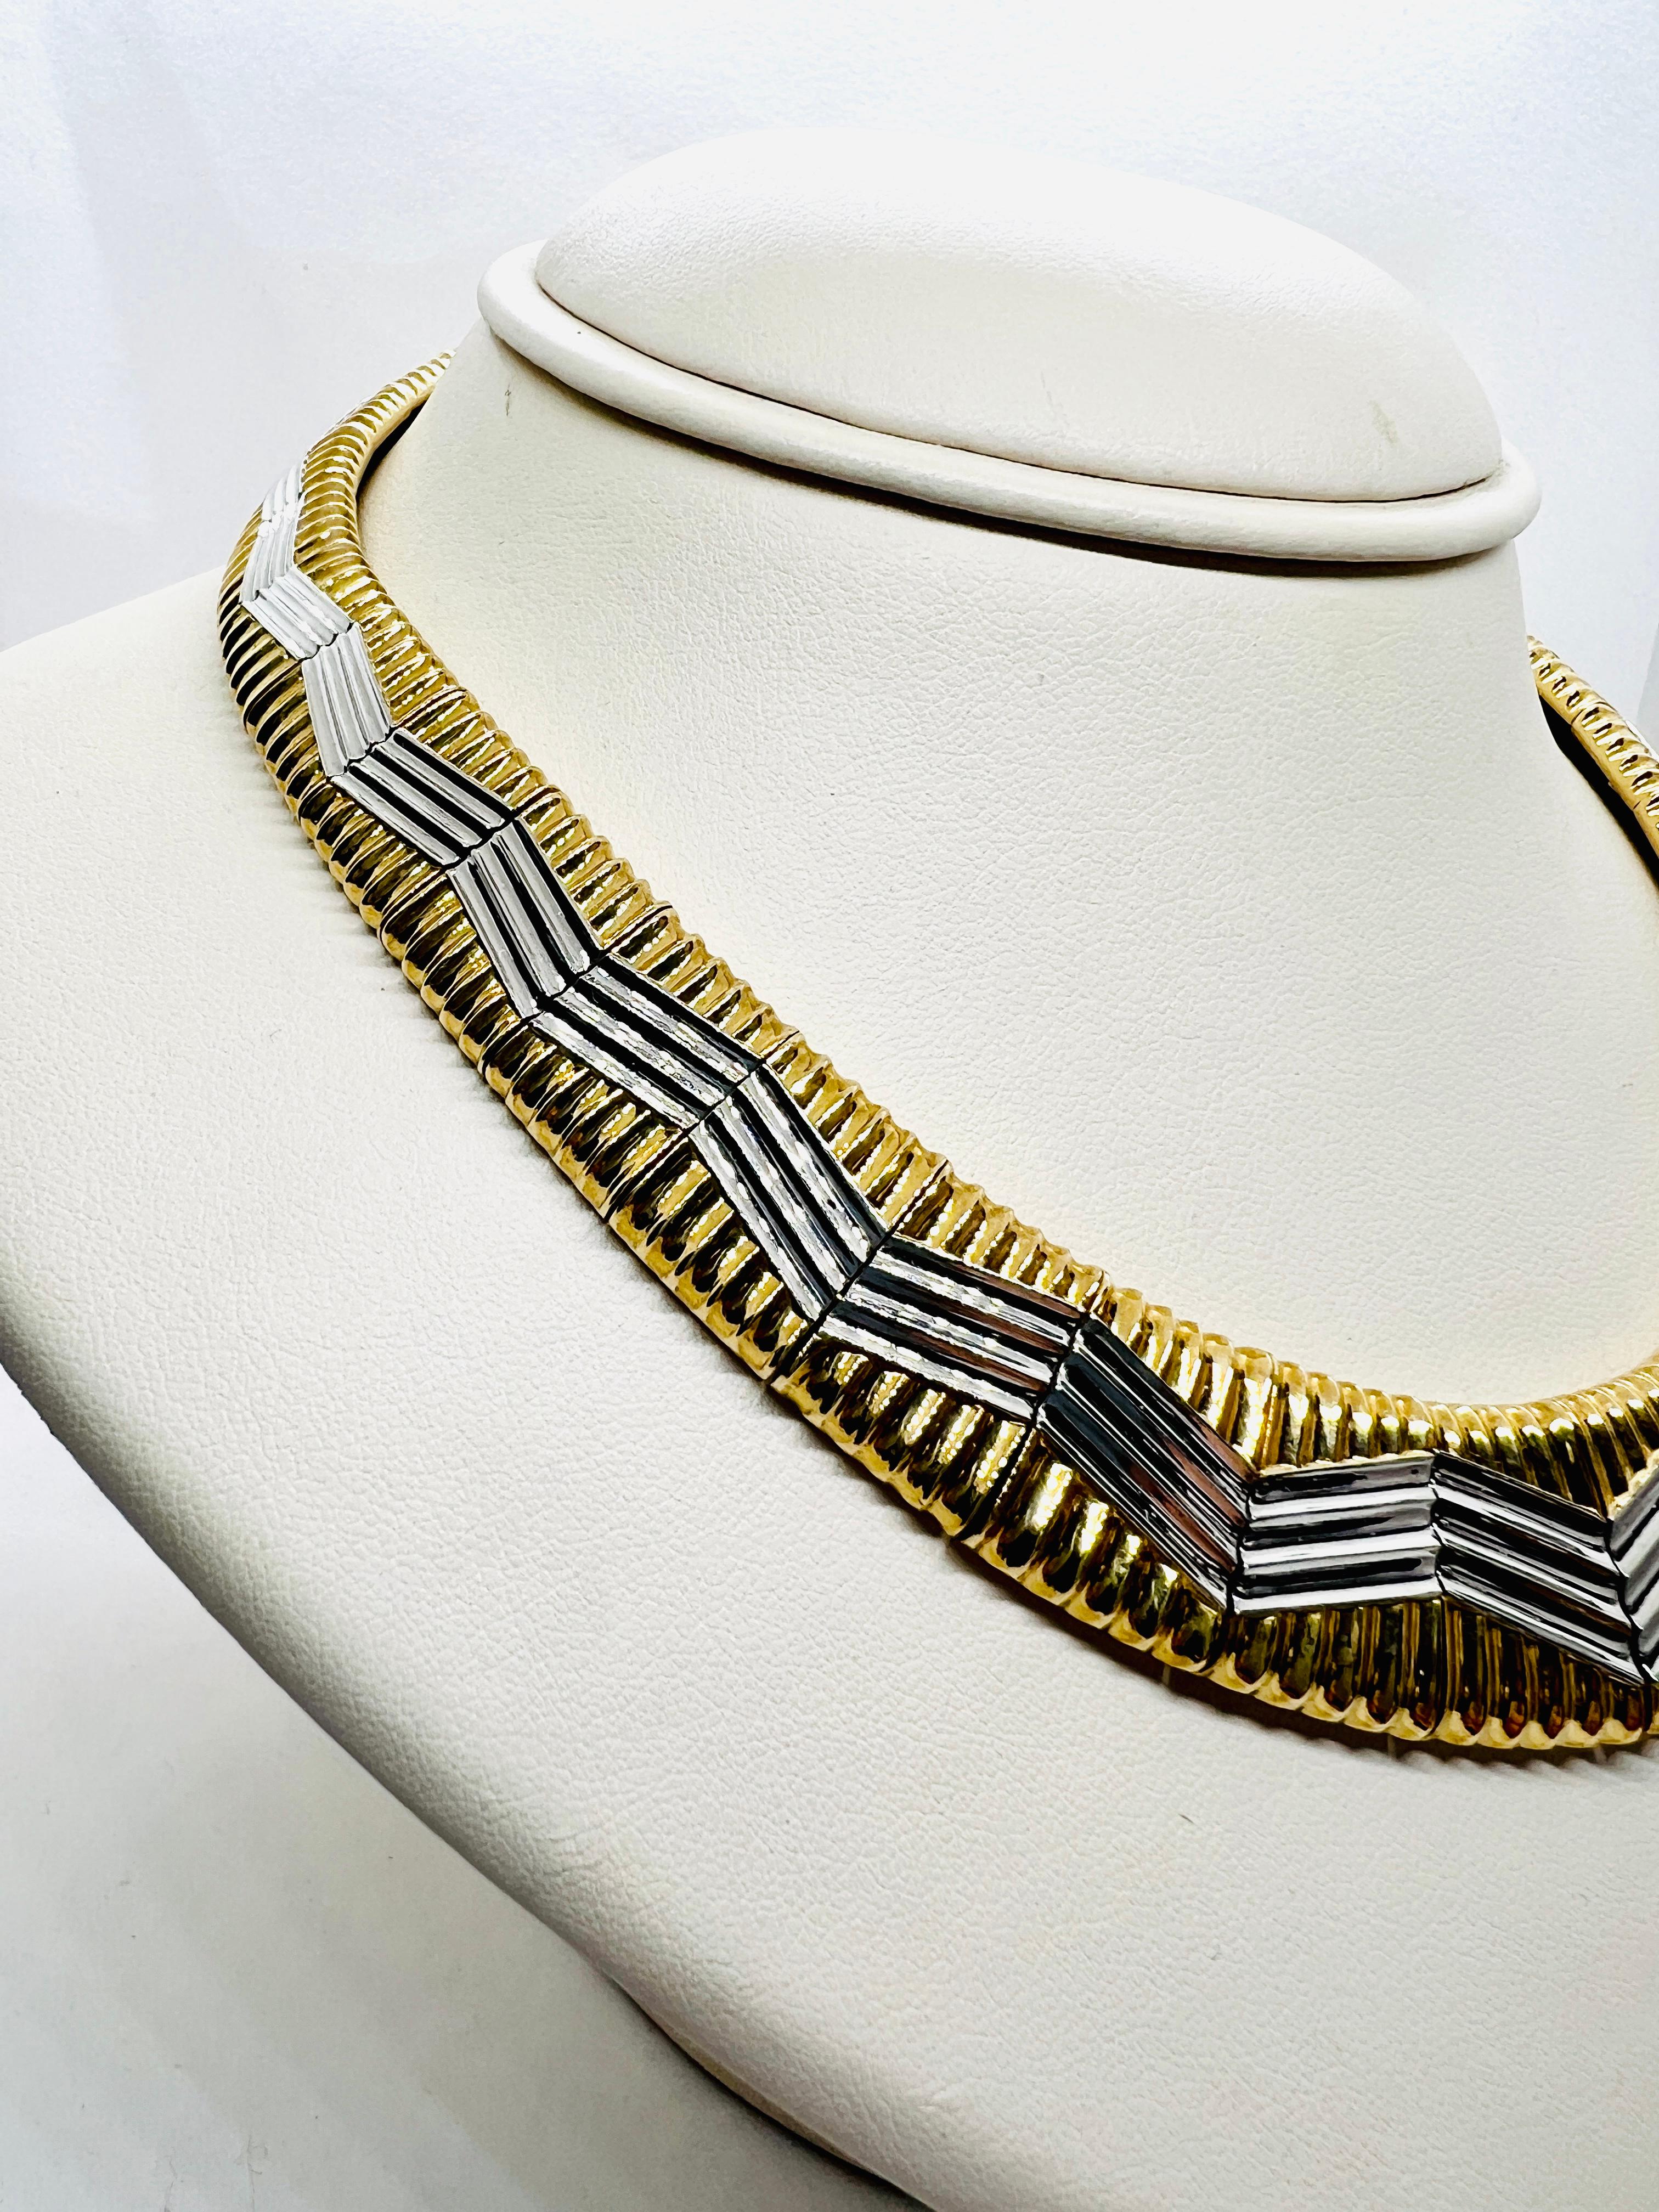 Designer Michael Bondanza 18k Yellow Gold & Platinum Necklace & Earrings Suite 8